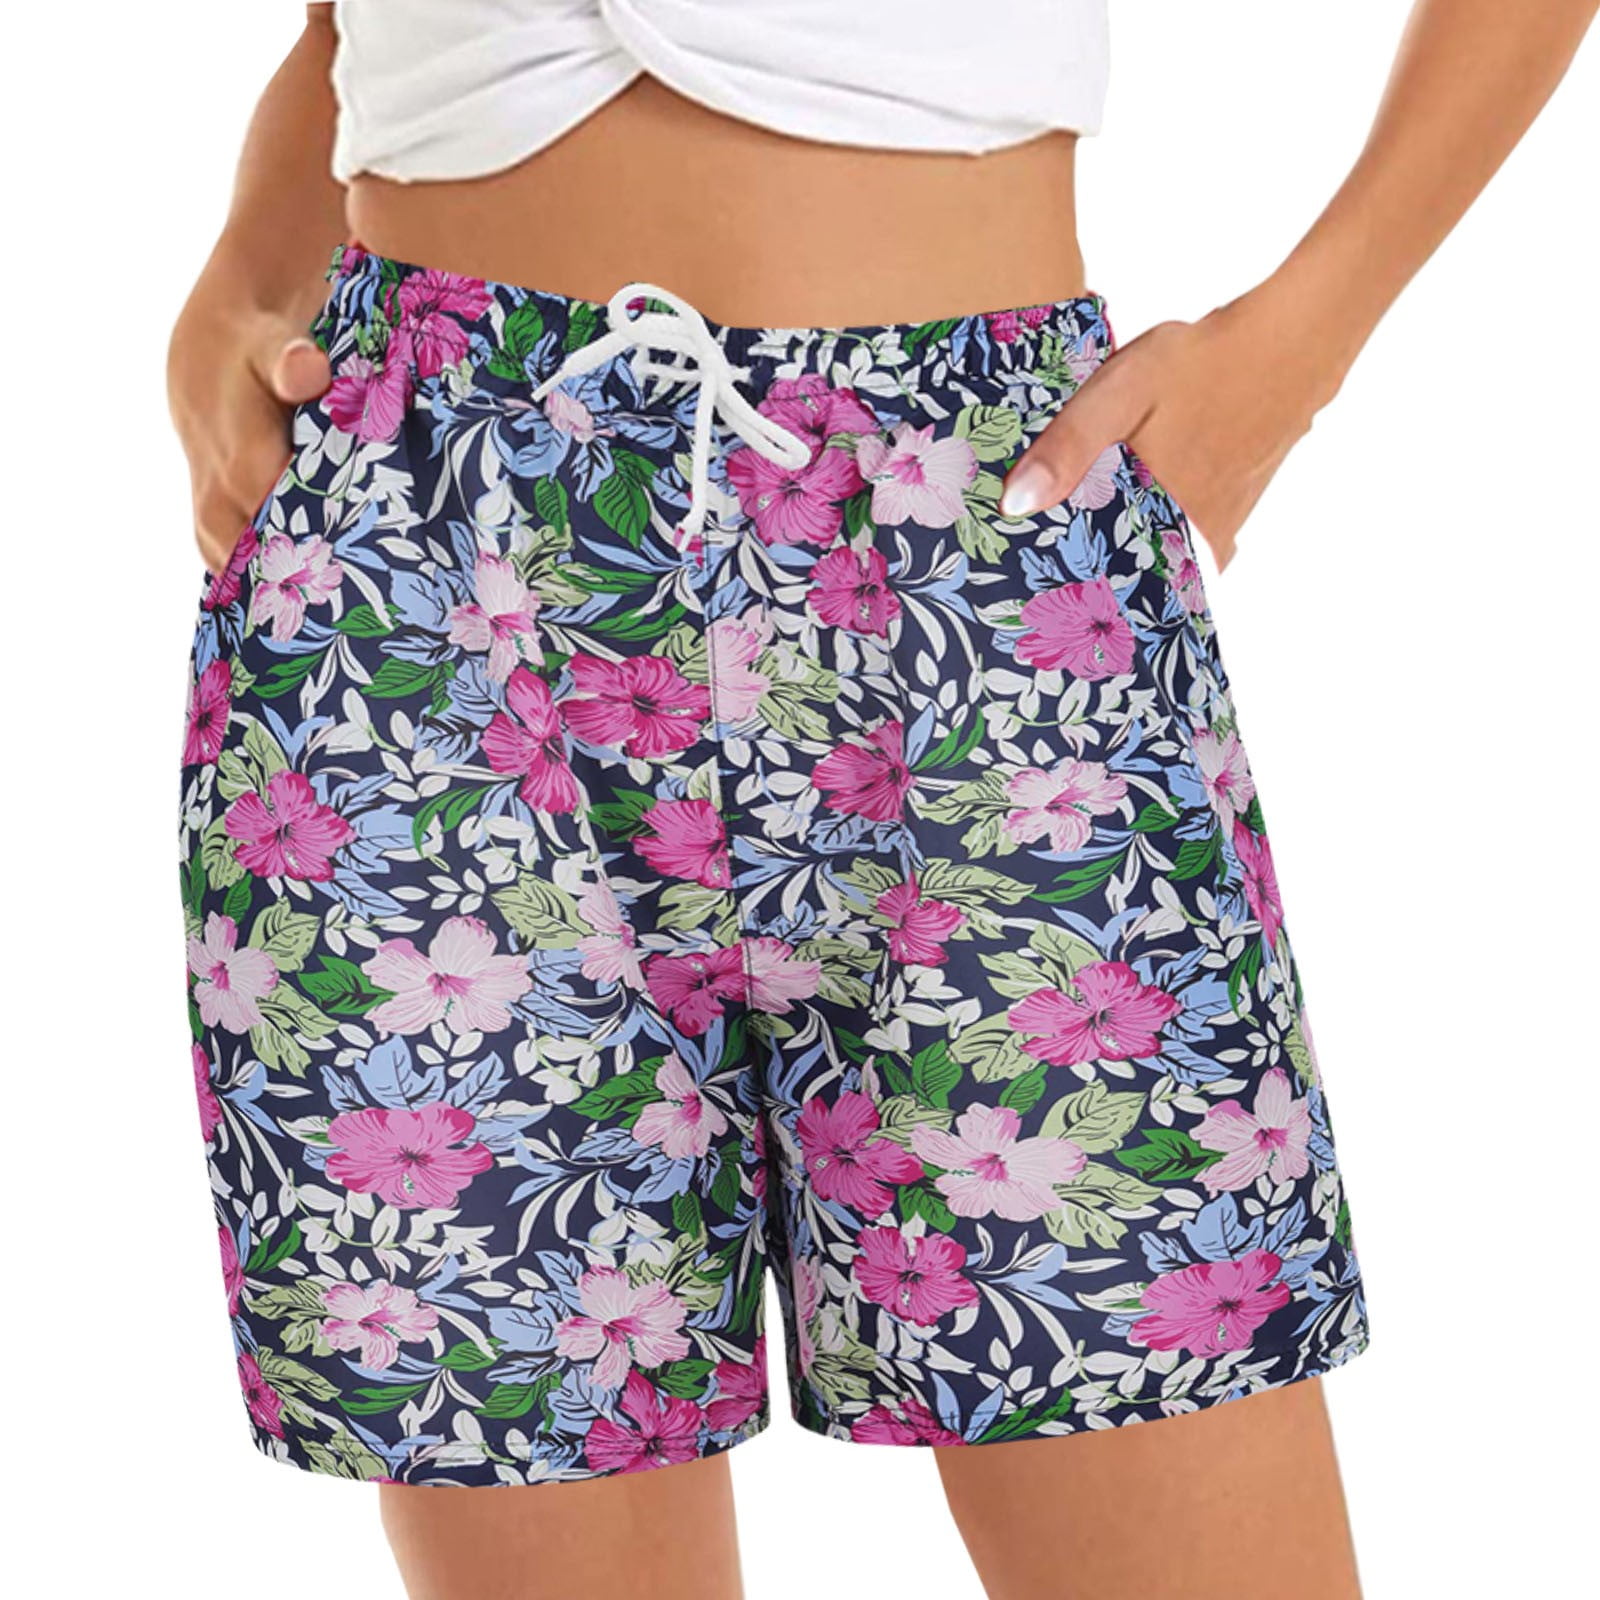 QGQM Women's Casual Shorts Floral Pattern Boho Hawaiian Beach Shorts Casual  Loose Fit Drawstring Shorts with Pockets Juniors Shorts